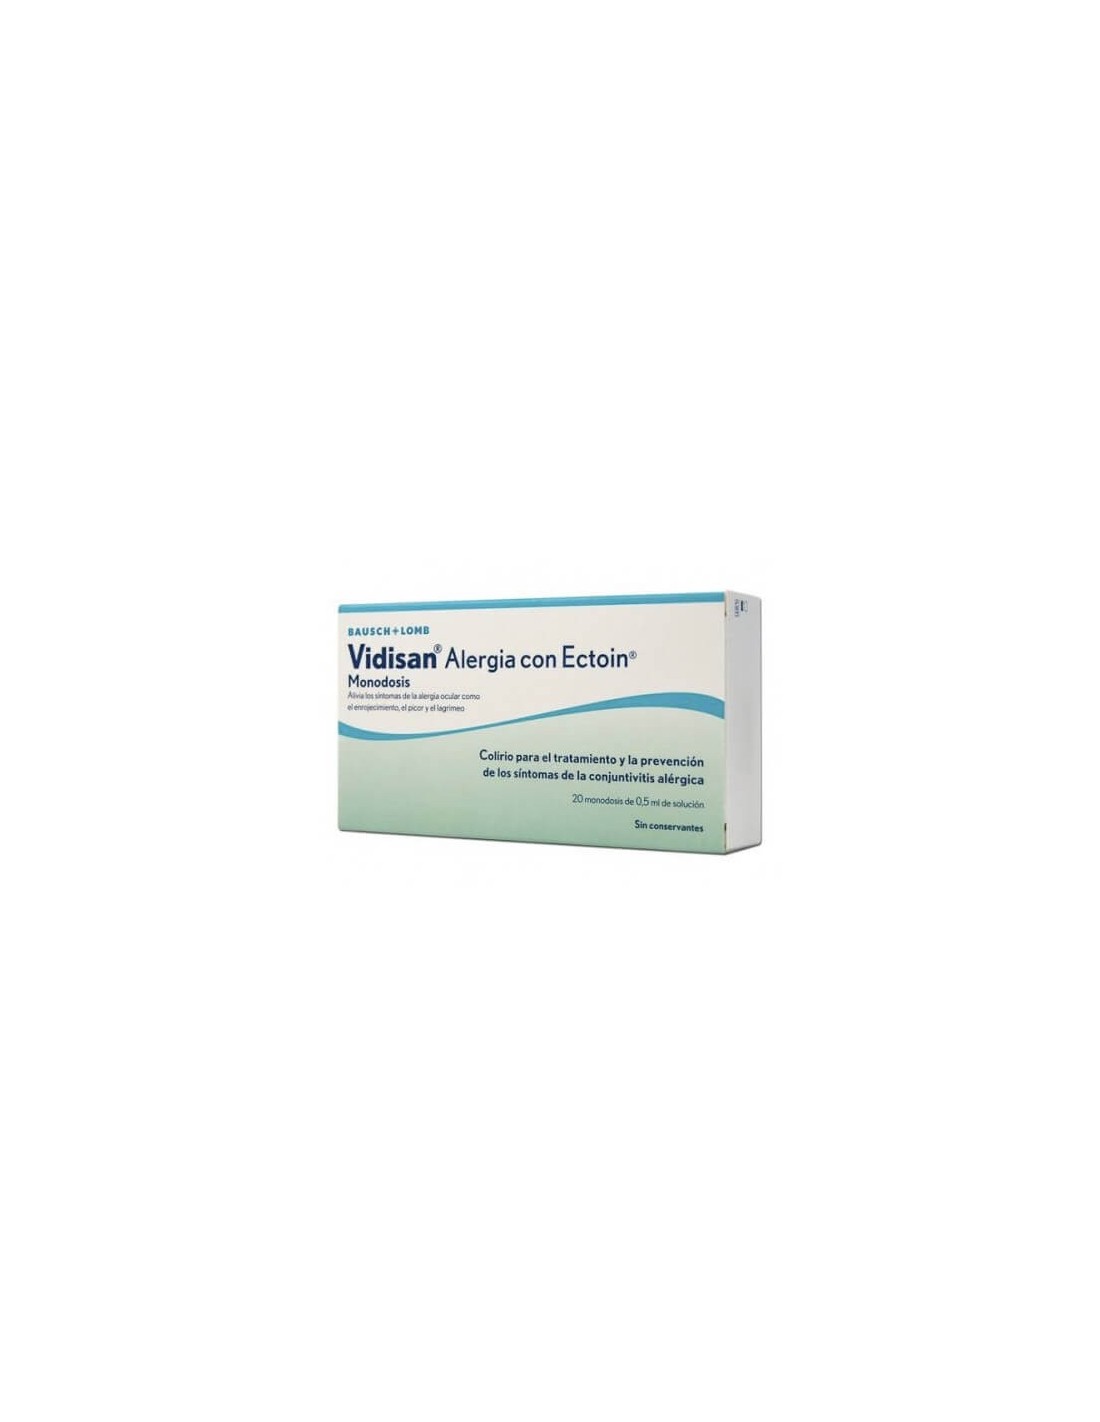 Vidisan Alergia con Ectoin Monodosis 20 x 0,5ml